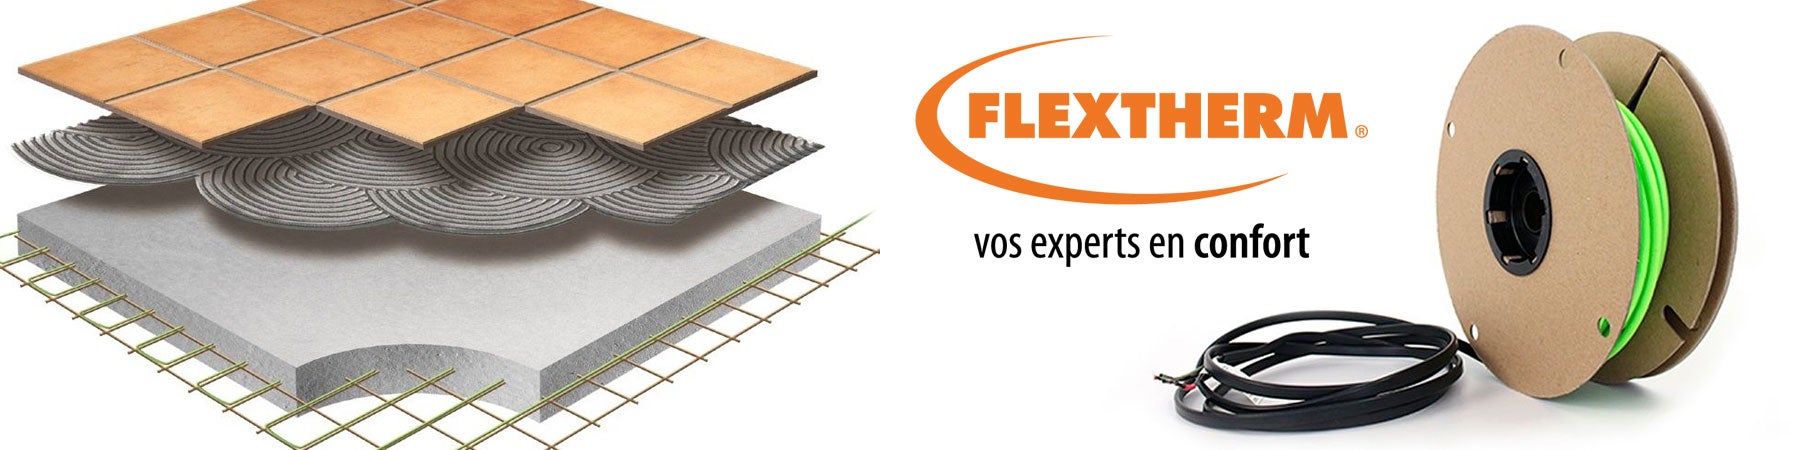 Flextherm – Câble Vert Enfouissement. Vos experts en confort